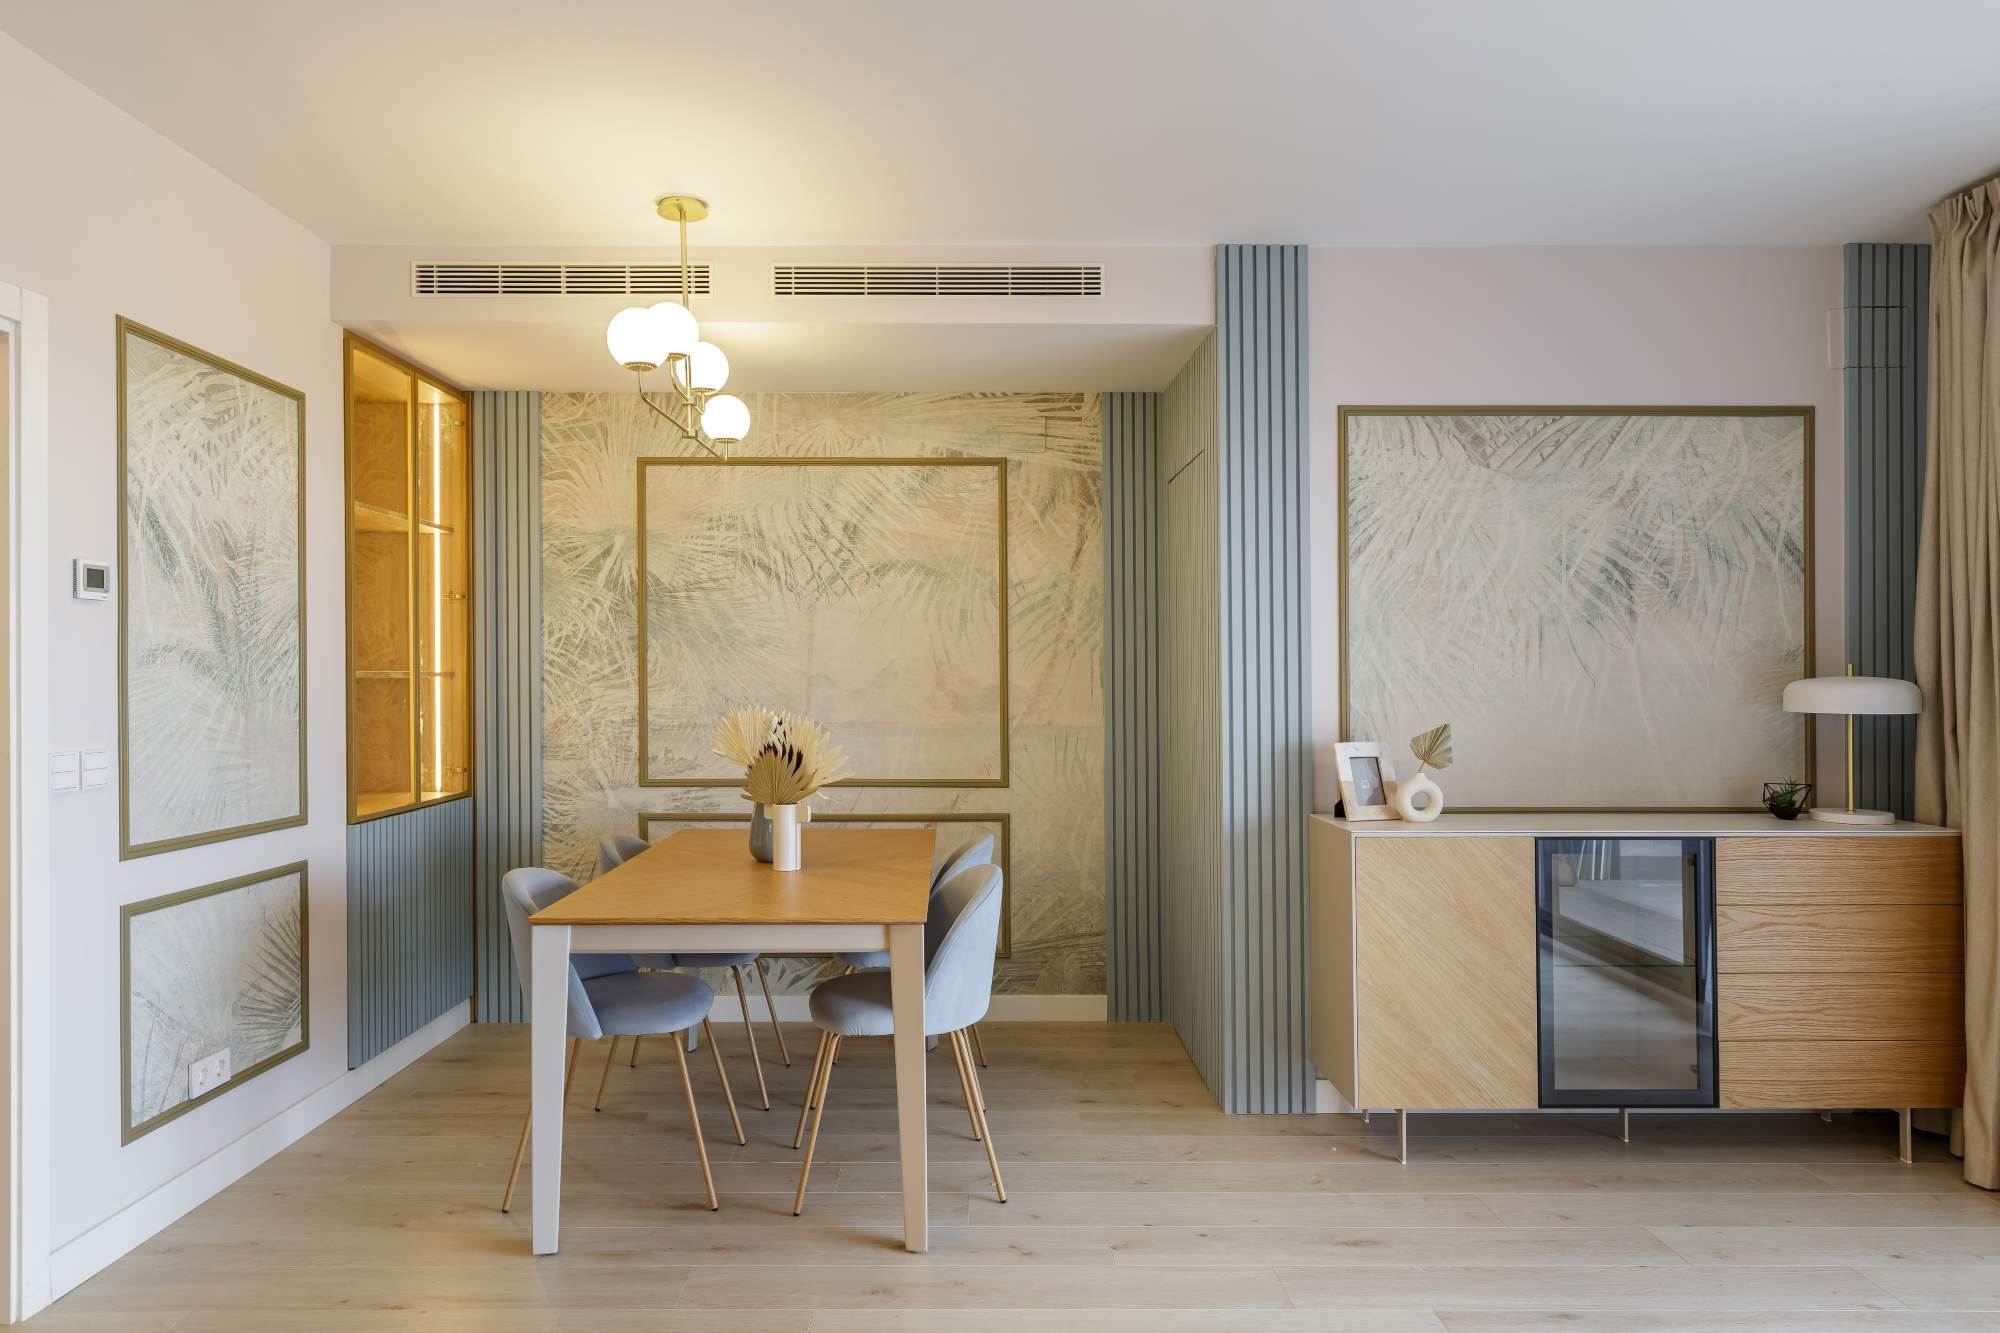 Un salón comedor con zona office en tonos azulados y con madera.